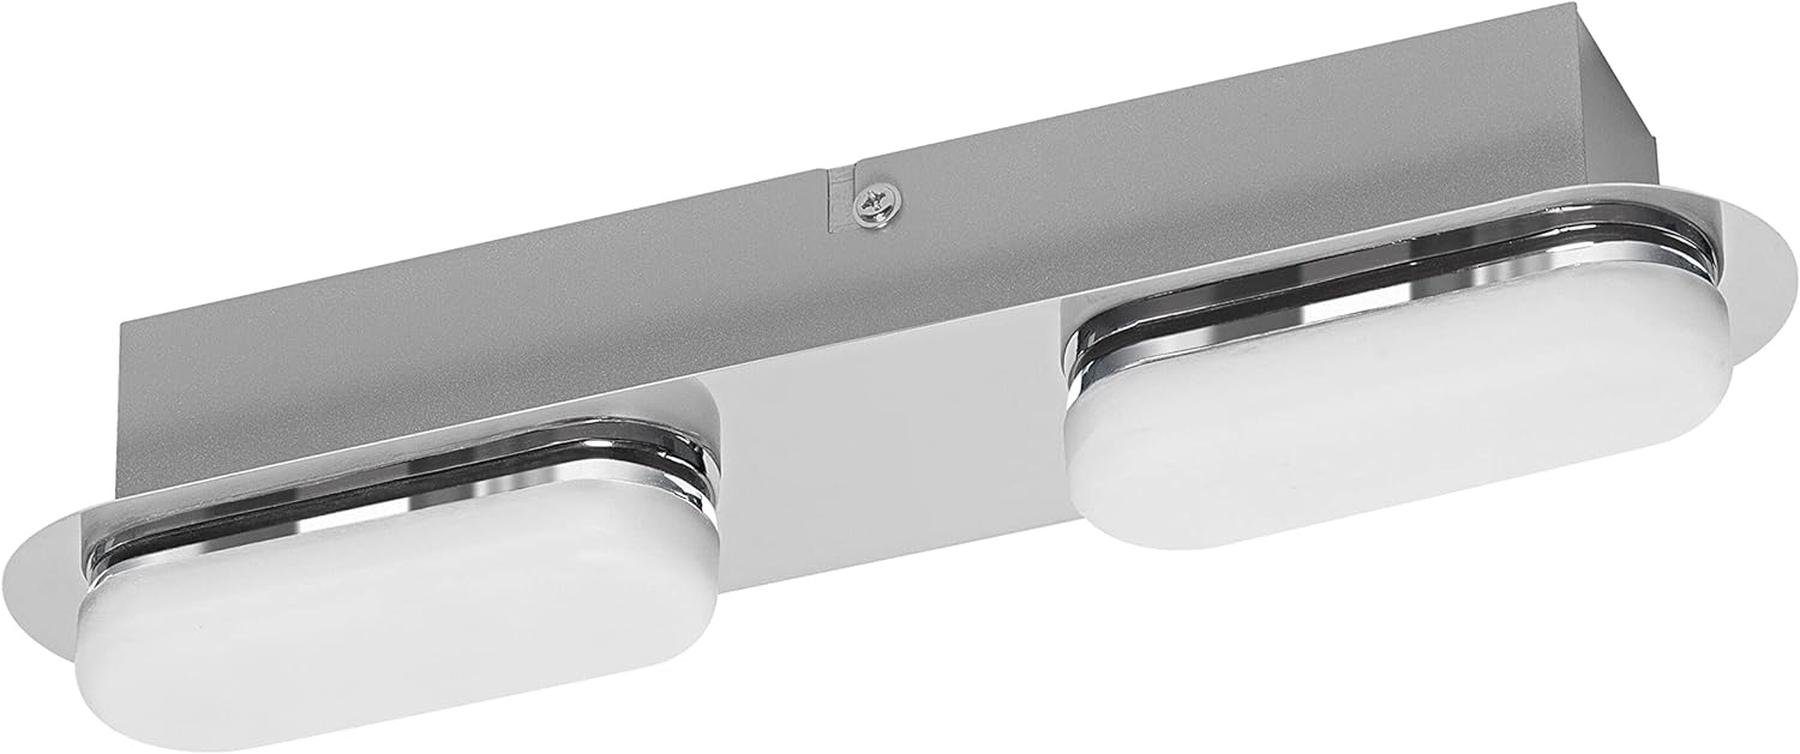 Ledvance LED Einbauleuchte Ledvance Smart LED Badezimmerlampe chrome, 15W,30 cm | Alle Lampen